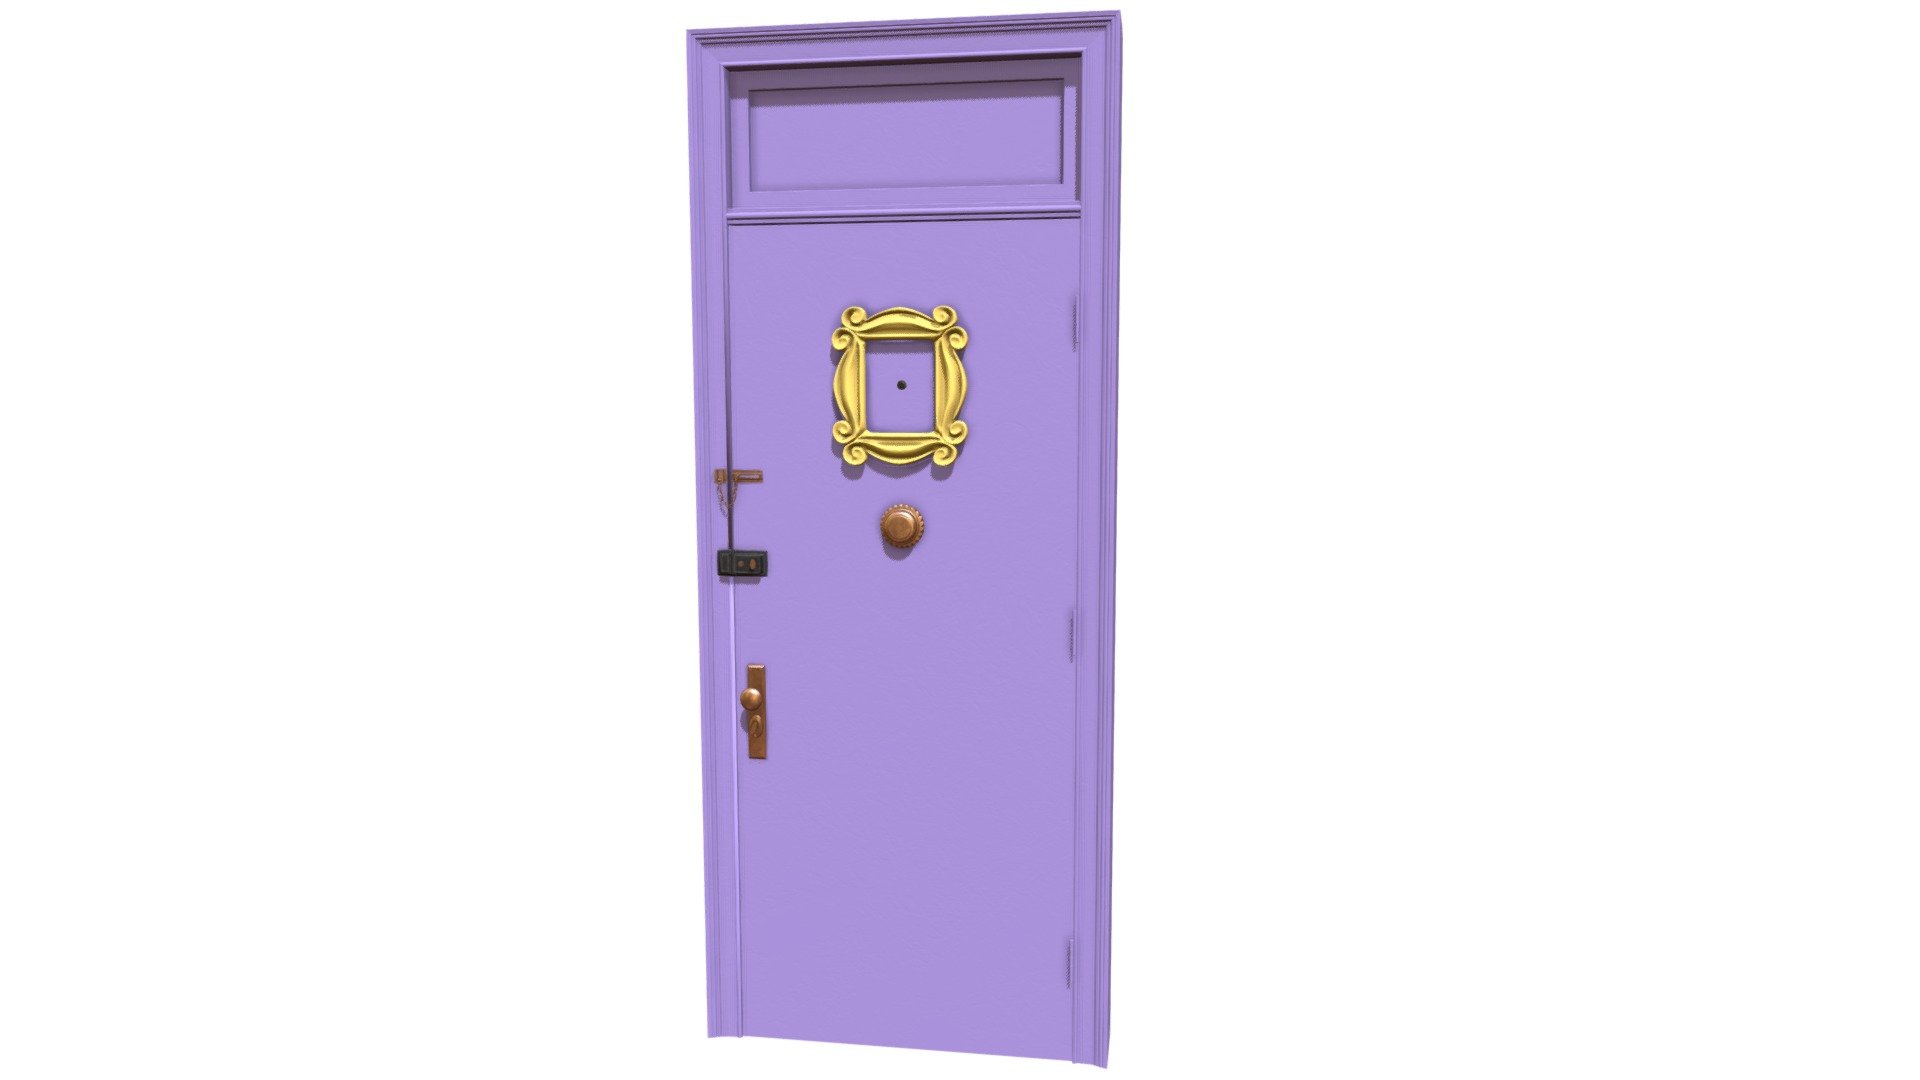 *This is the door from &ldquo;Friends